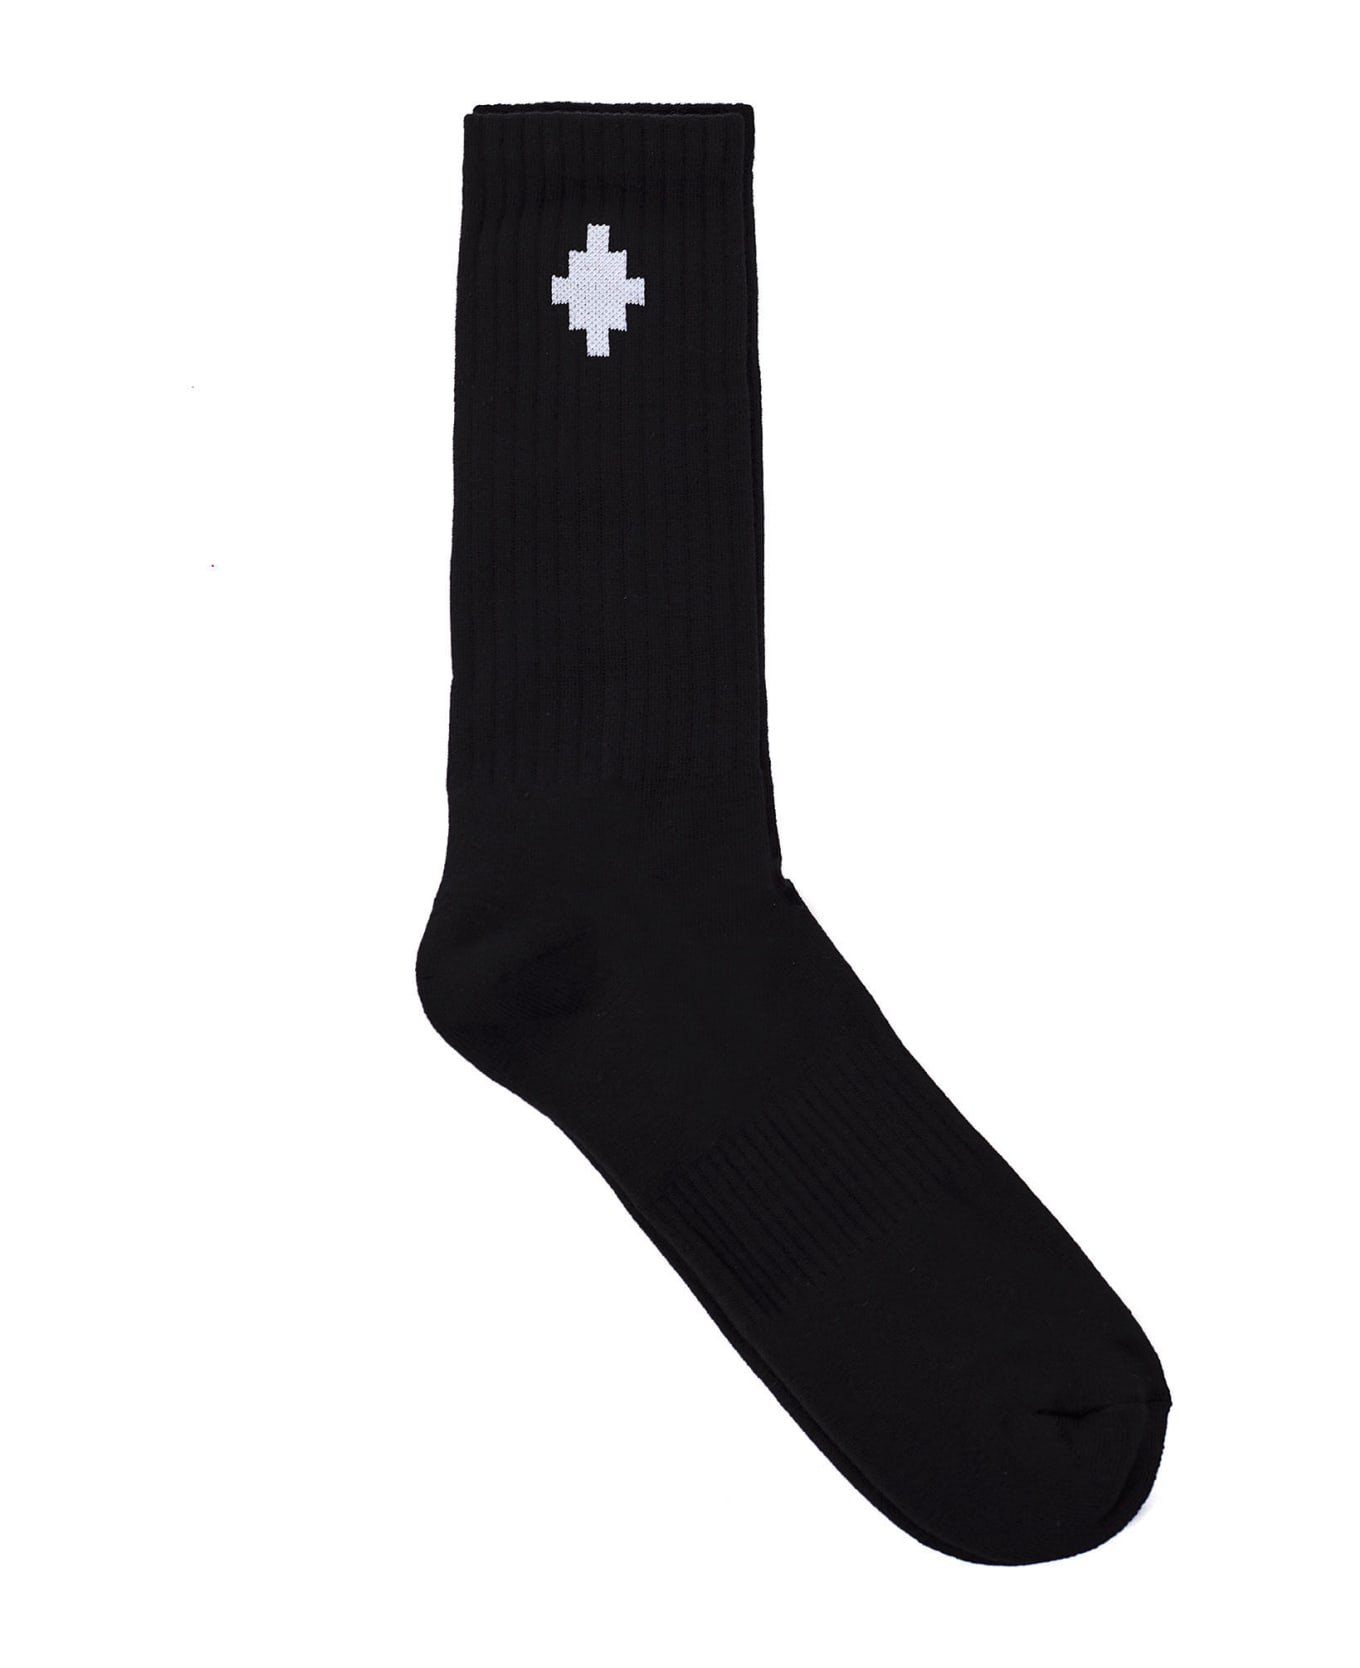 Marcelo Burlon Cross Socks - Black white